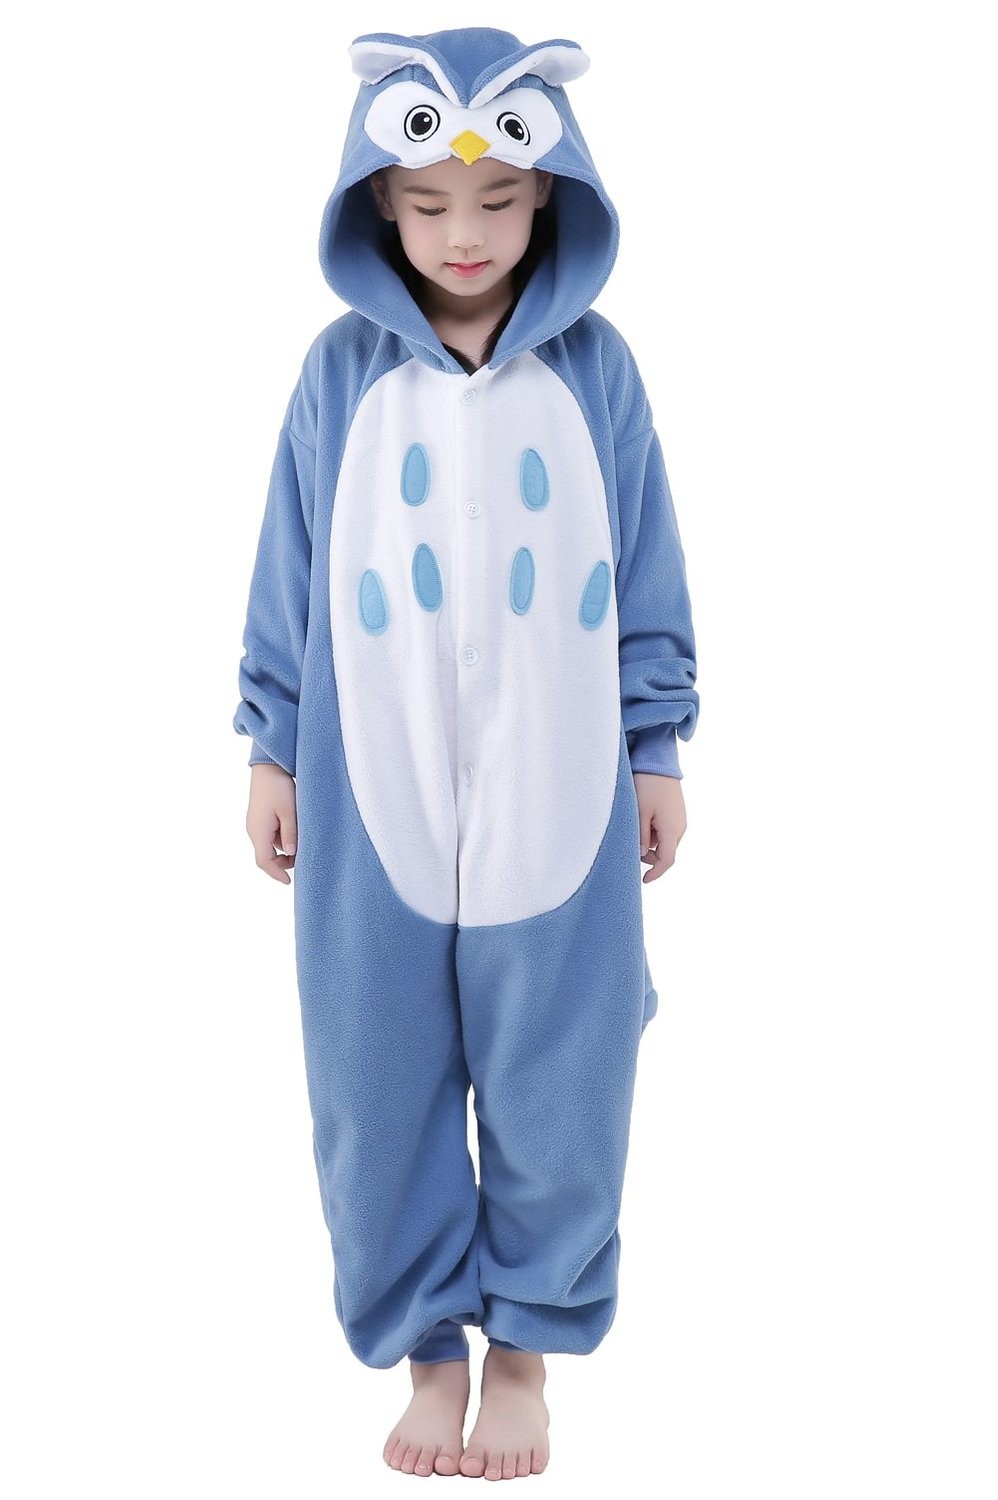 Unisexe Enfants Kigurumi Animal Cosplay Costume Pyjamas 17 Sleepwear Outfit